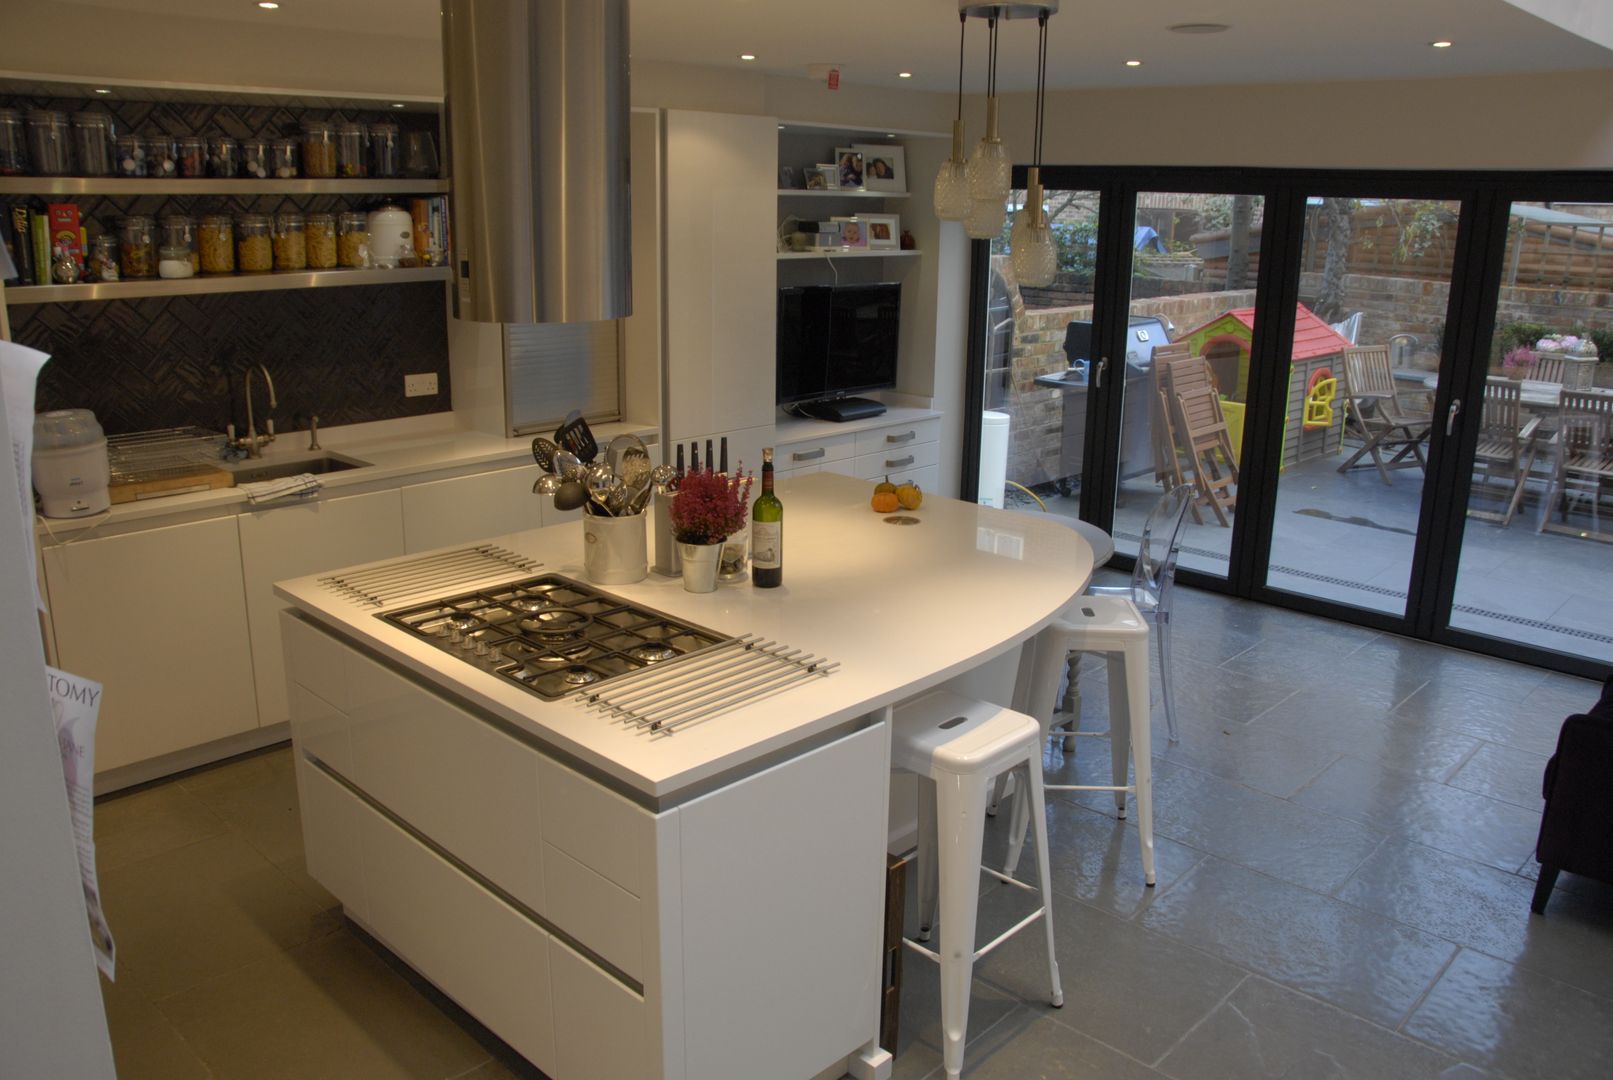 High gloss handleless kitchen Greengage Interiors Modern kitchen handleless,high gloss